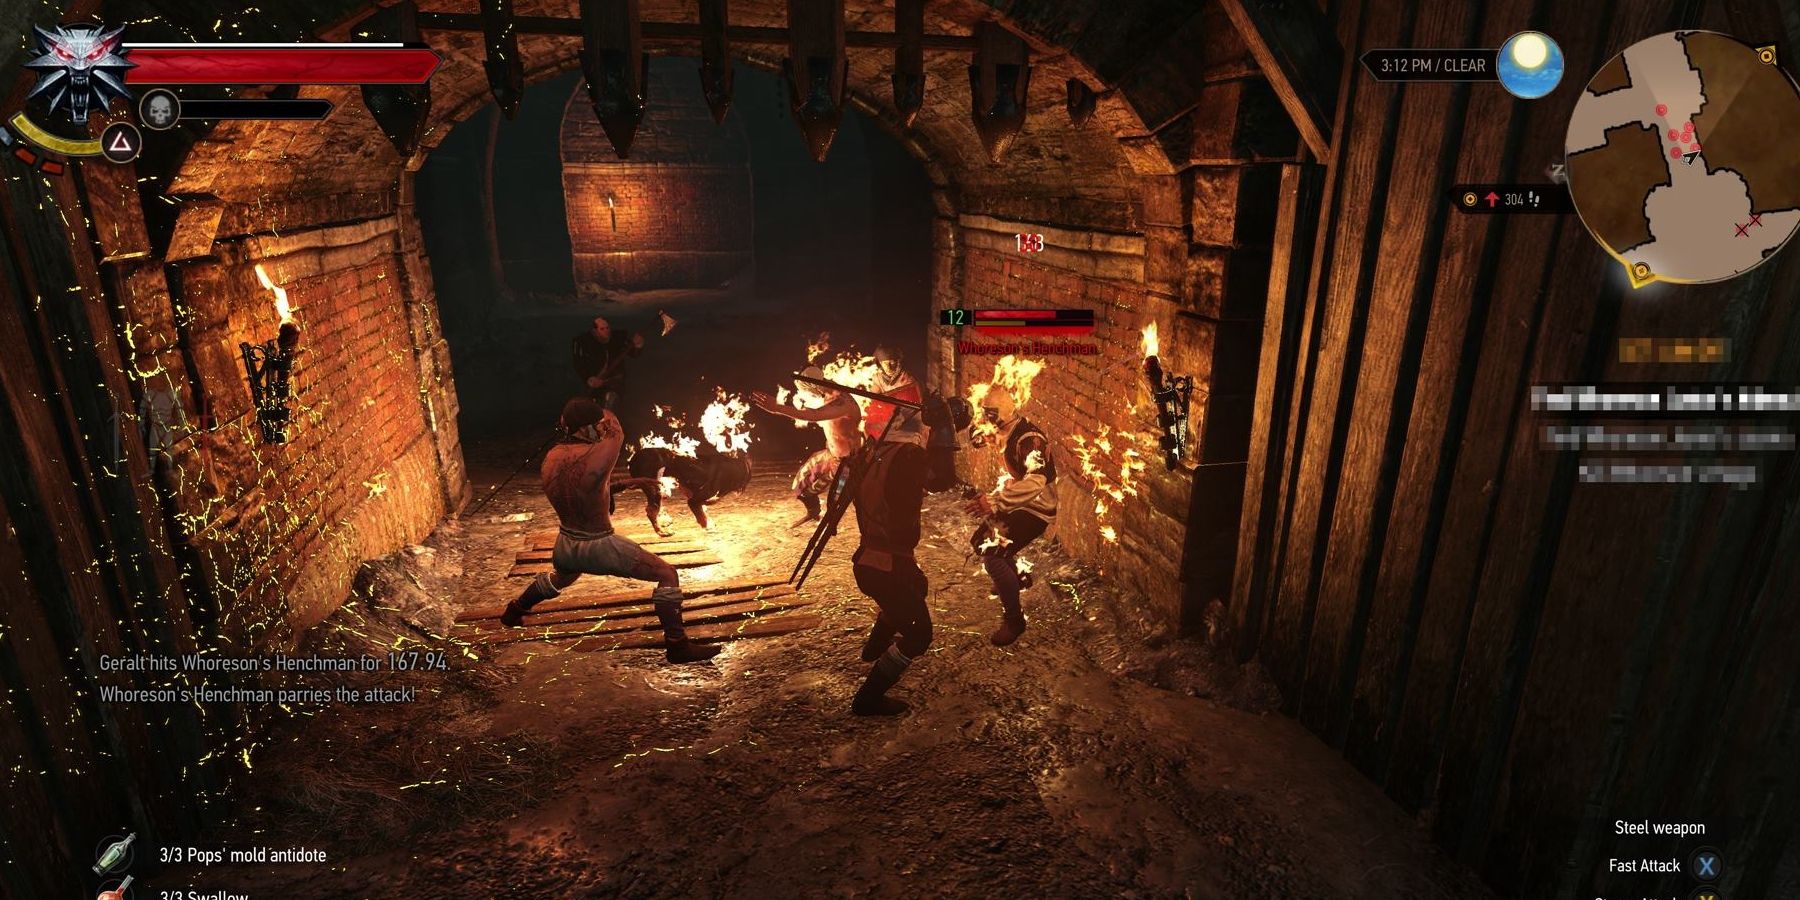 Geralt fighting humans in dark tunnel.